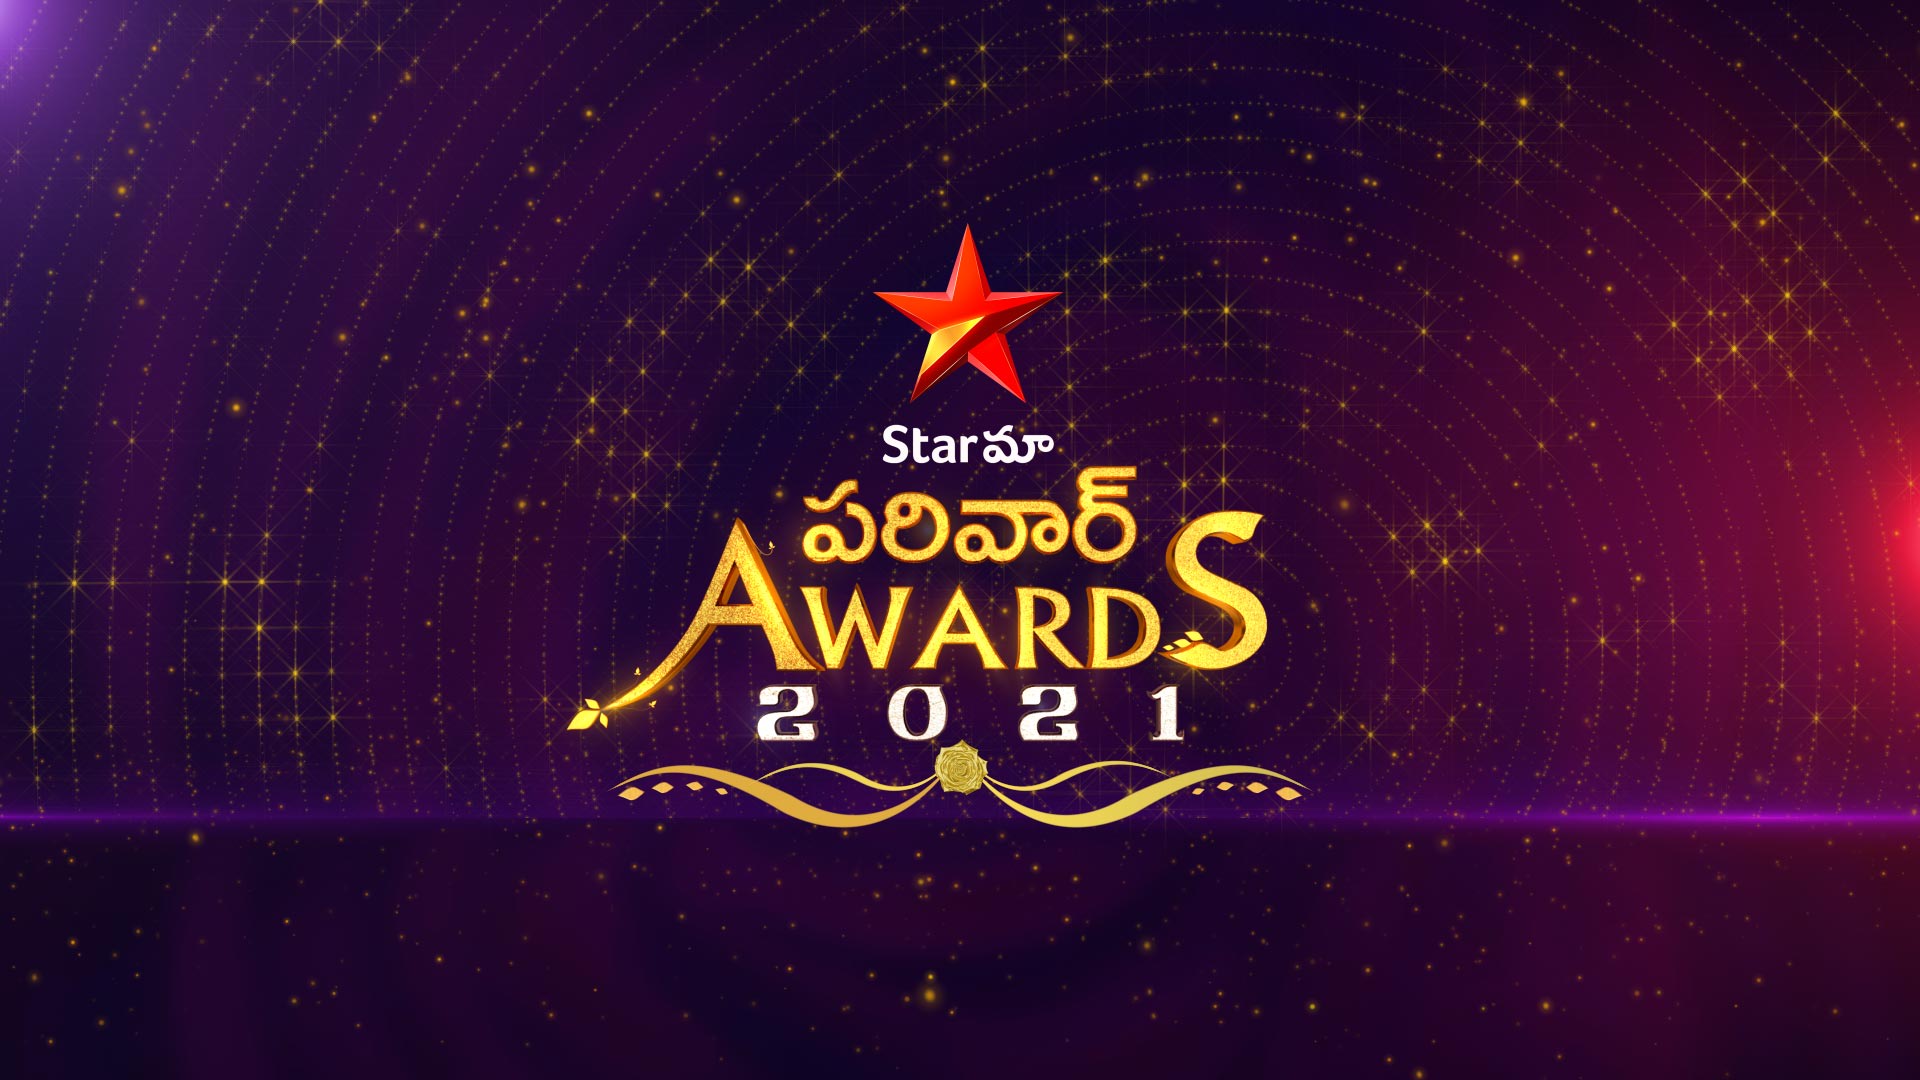 Star Maa Parivaar Awards Disney+ Hotstar